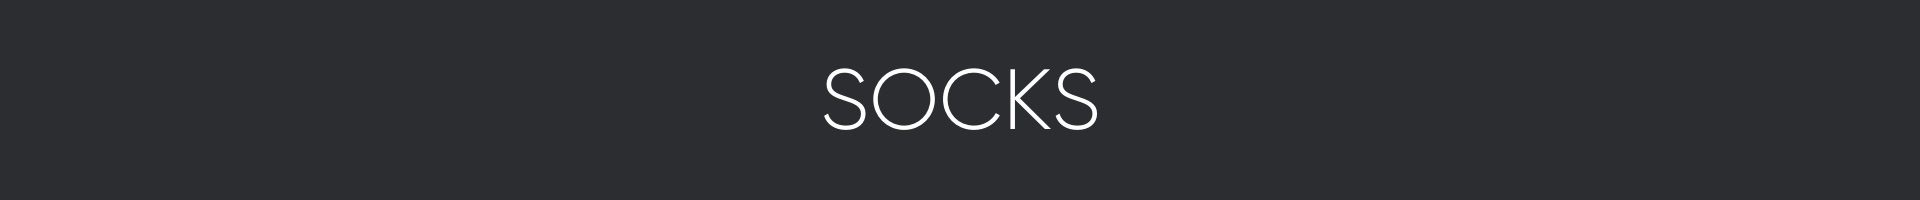 Socks Banner